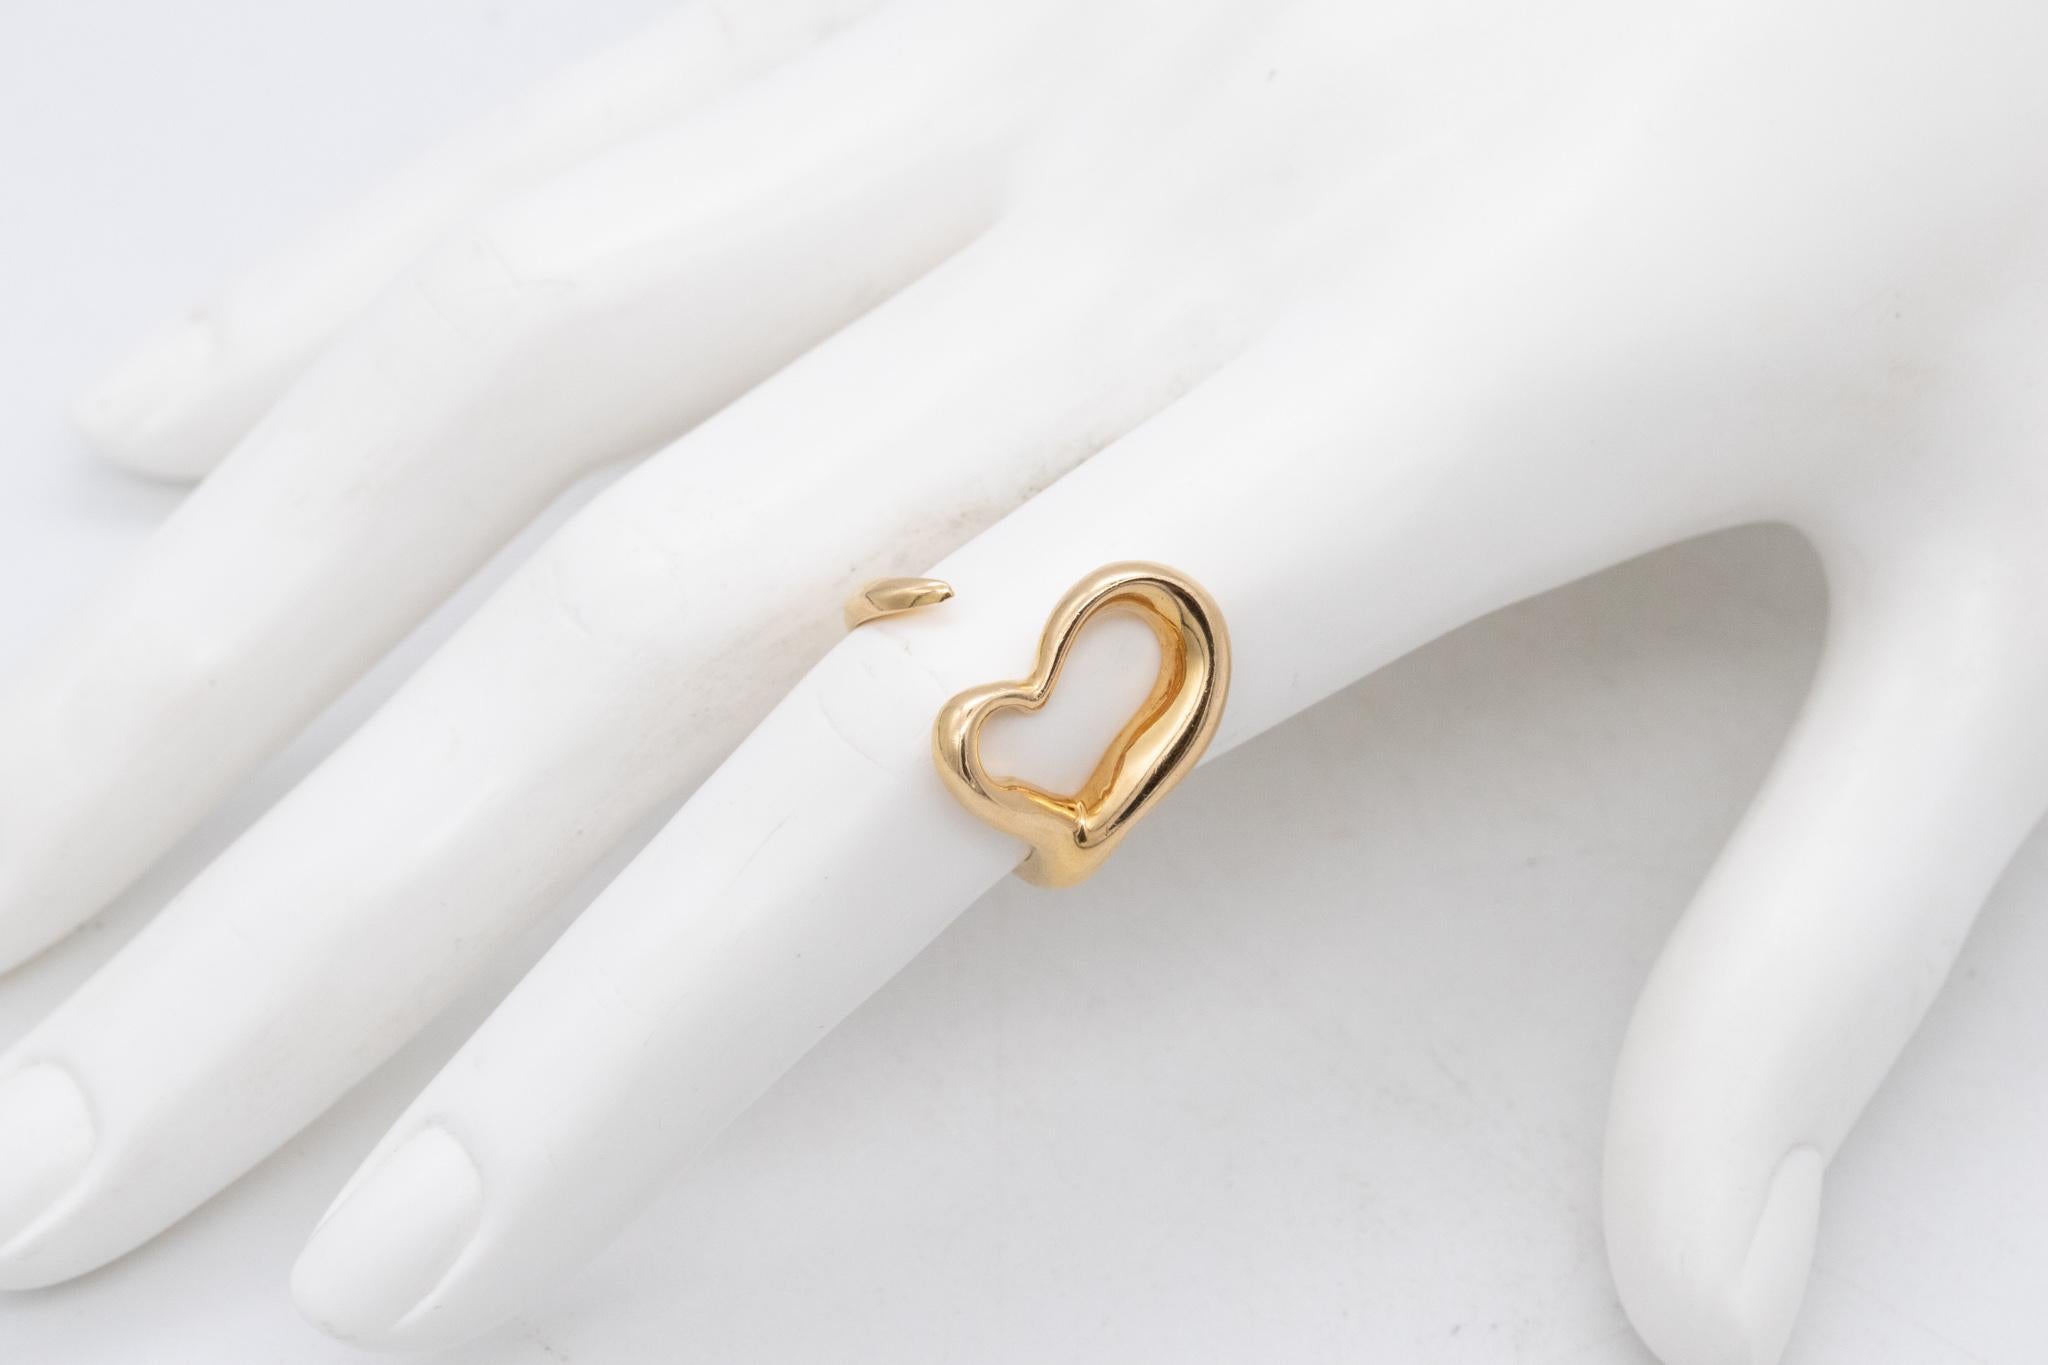 Bague en forme de cœur conçue par Elsa Peretti (1940-2021) pour Tiffany & Co.

Cette bague iconique et sculpturale de forme libre a été conçue par Peretti dans les années 1980. Elle a été réalisée en forme de cœur ouvert, en or jaune massif de 18